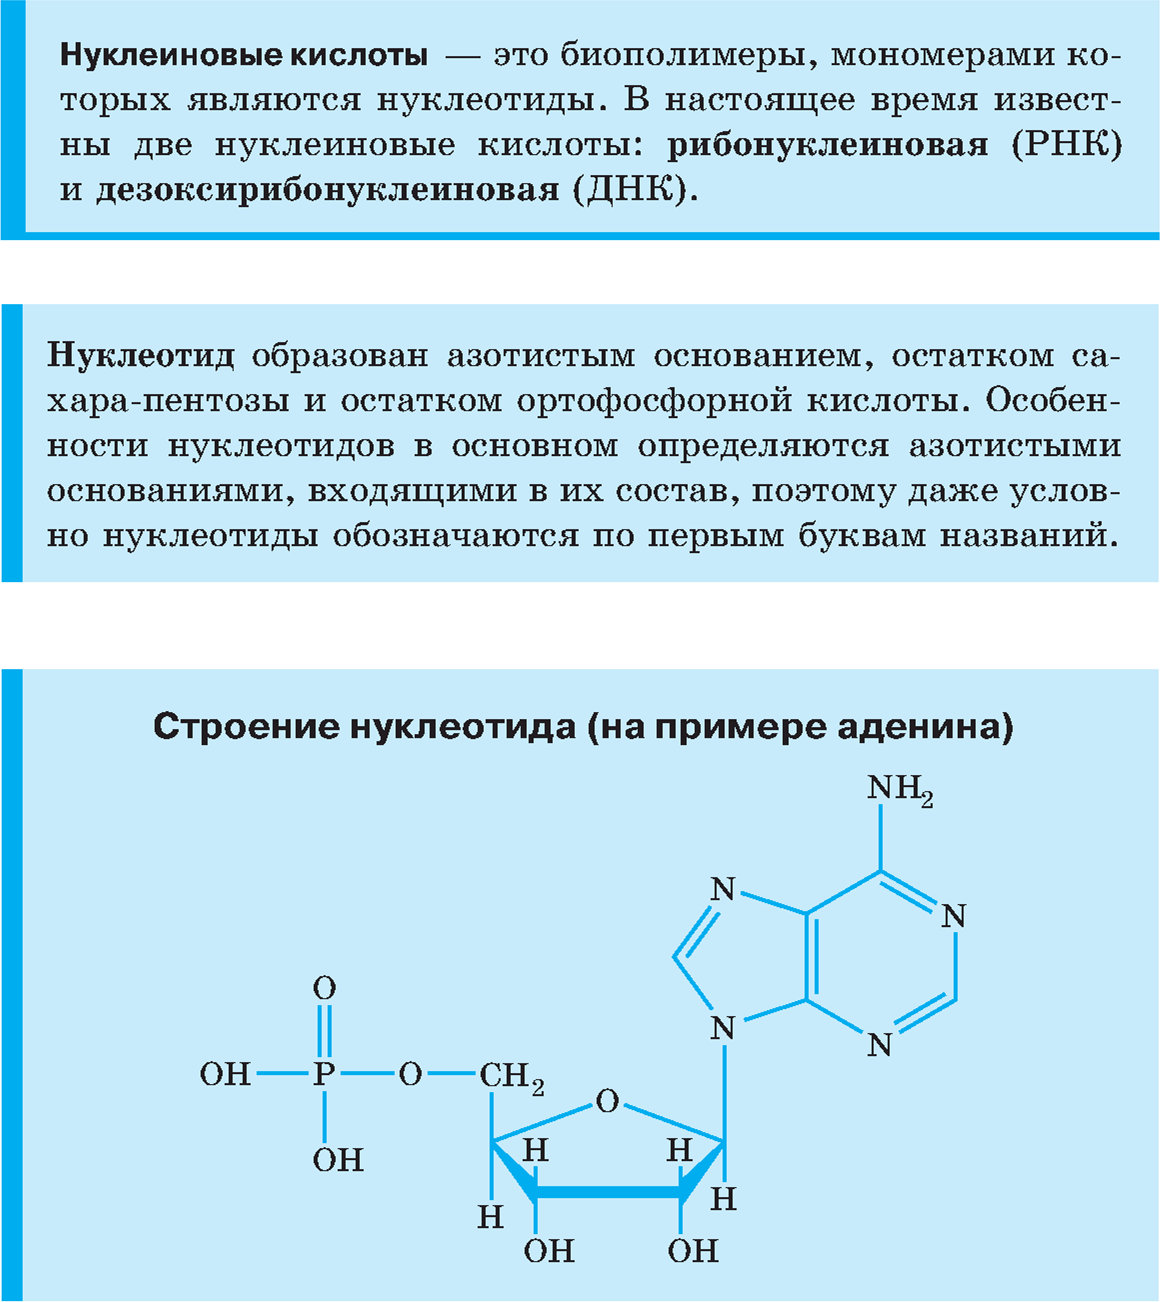 Нуклеиновые кислоты, строение нуклеотида (на примере аденина)